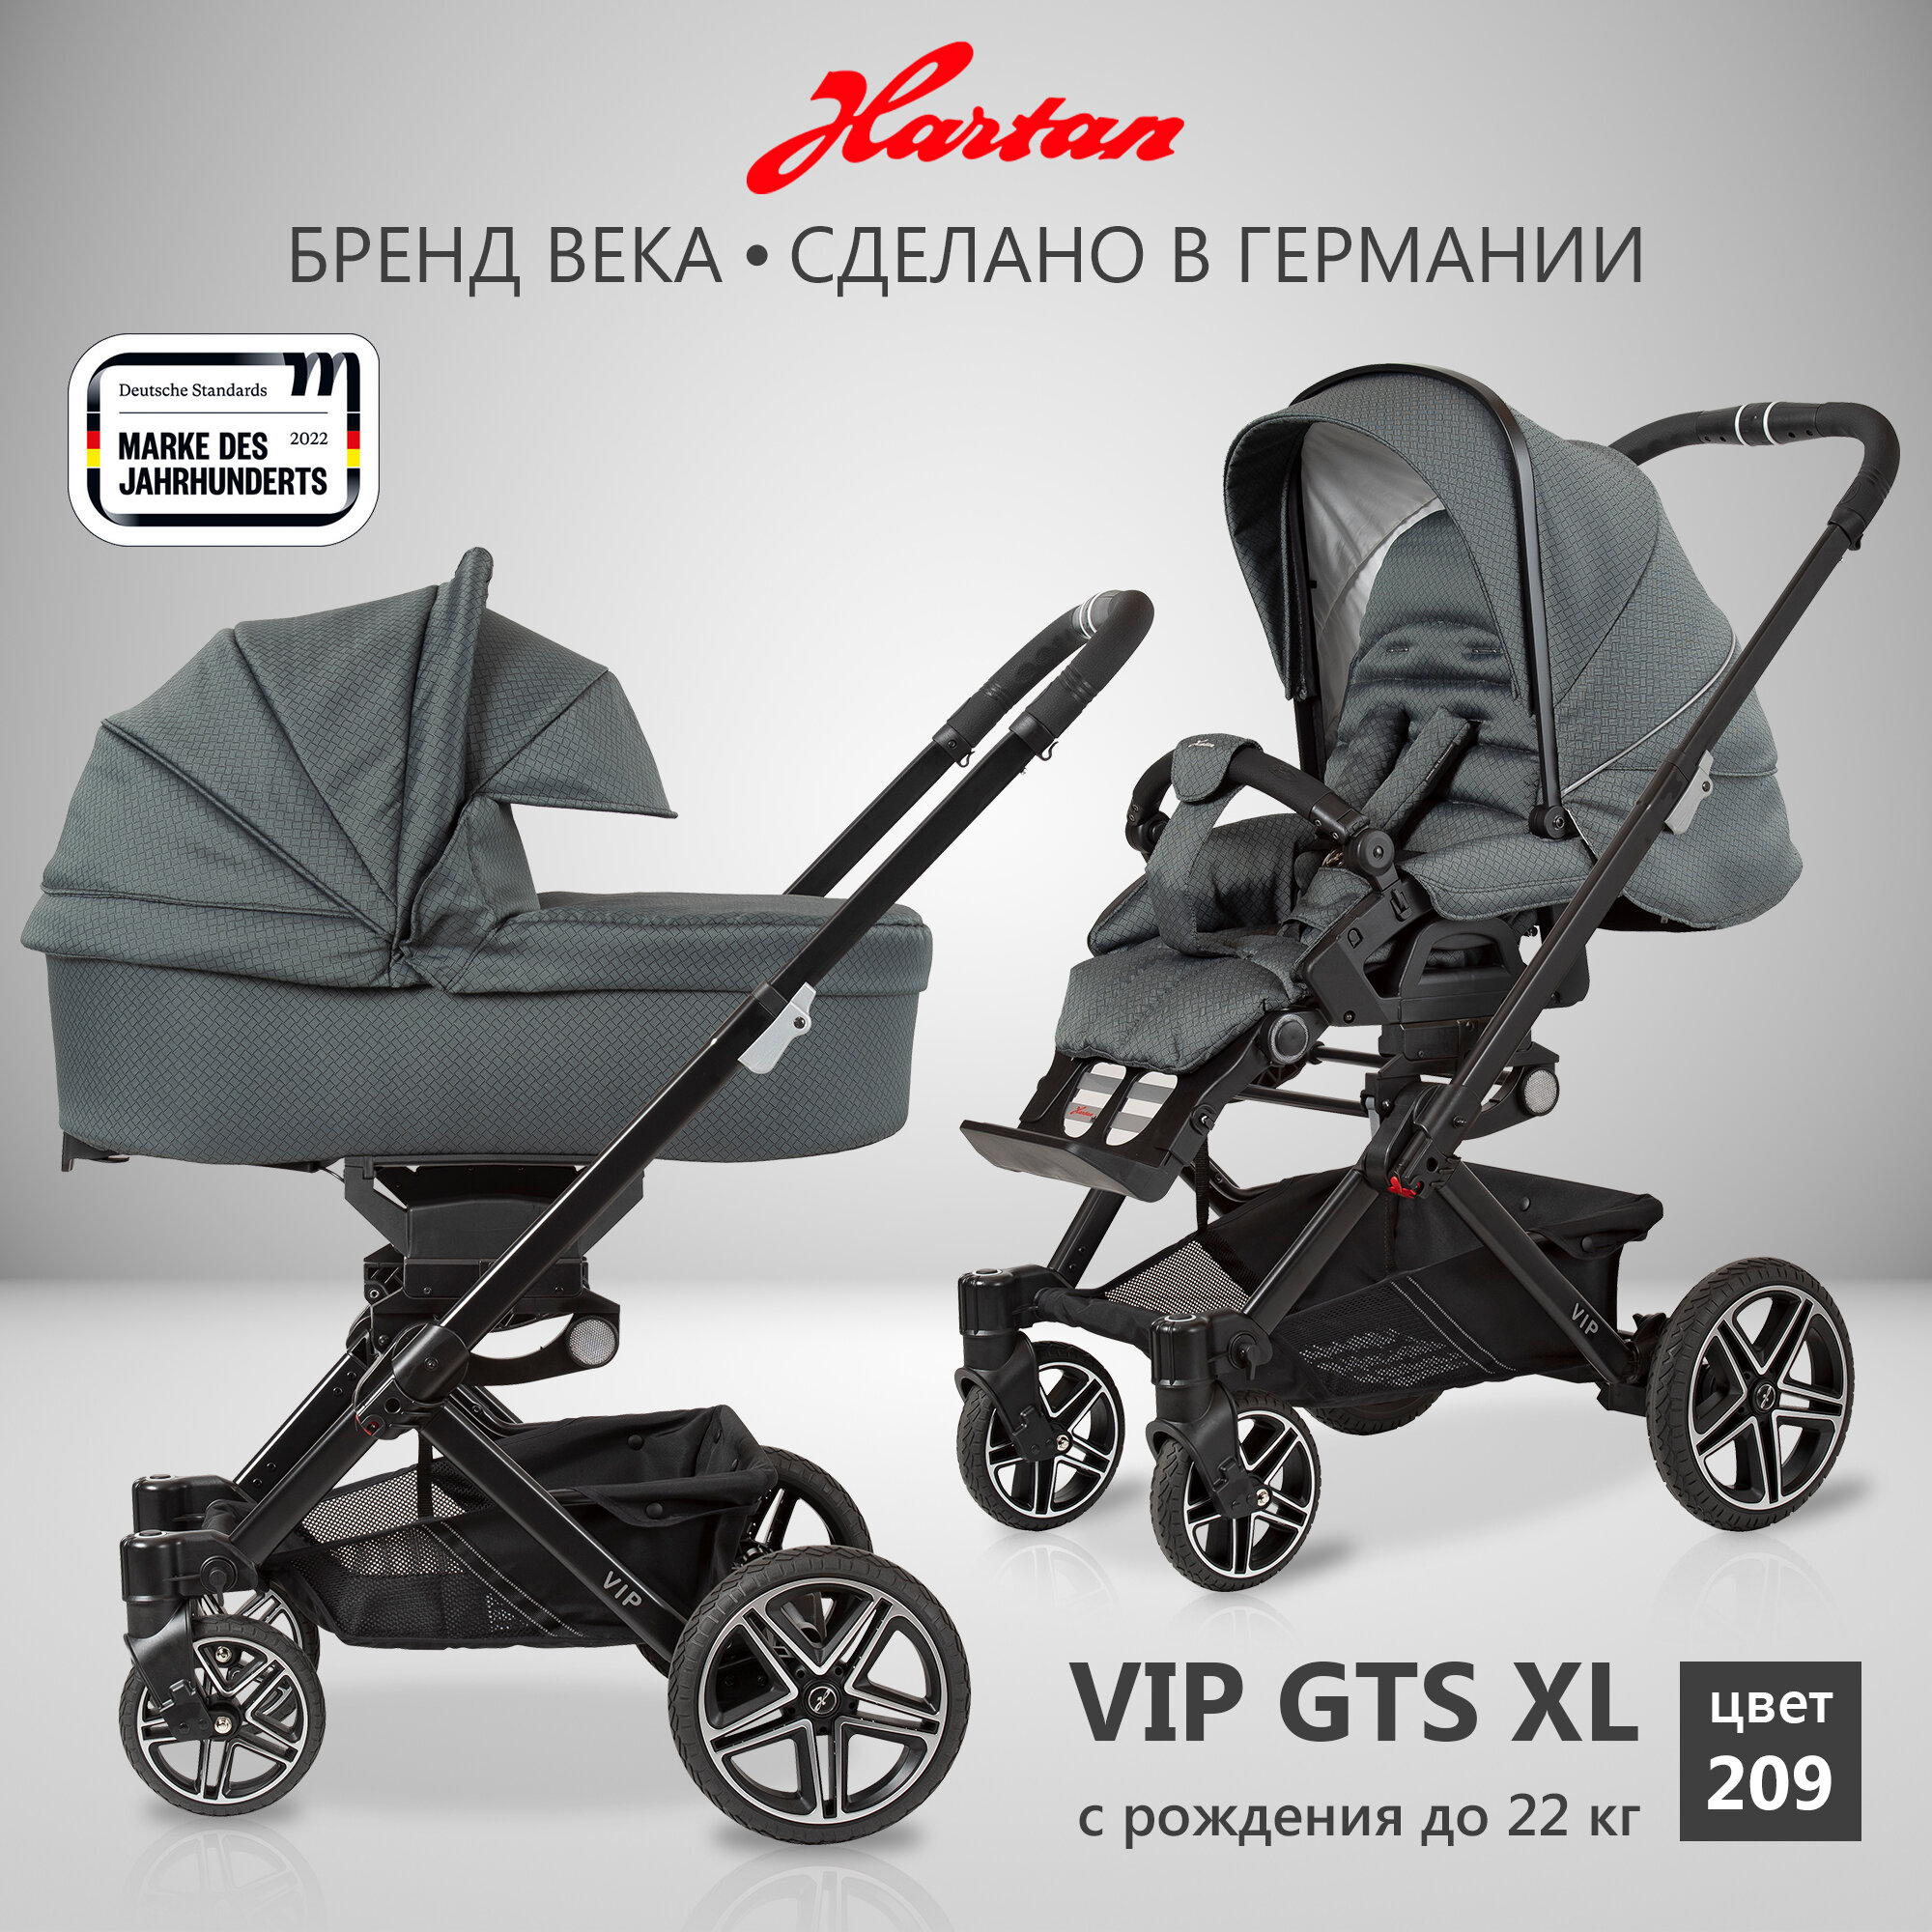 Детская коляска 2в1 Hartan VIP GTS XL 209, для новорожденных и детей весом до 22 кг, универсальная